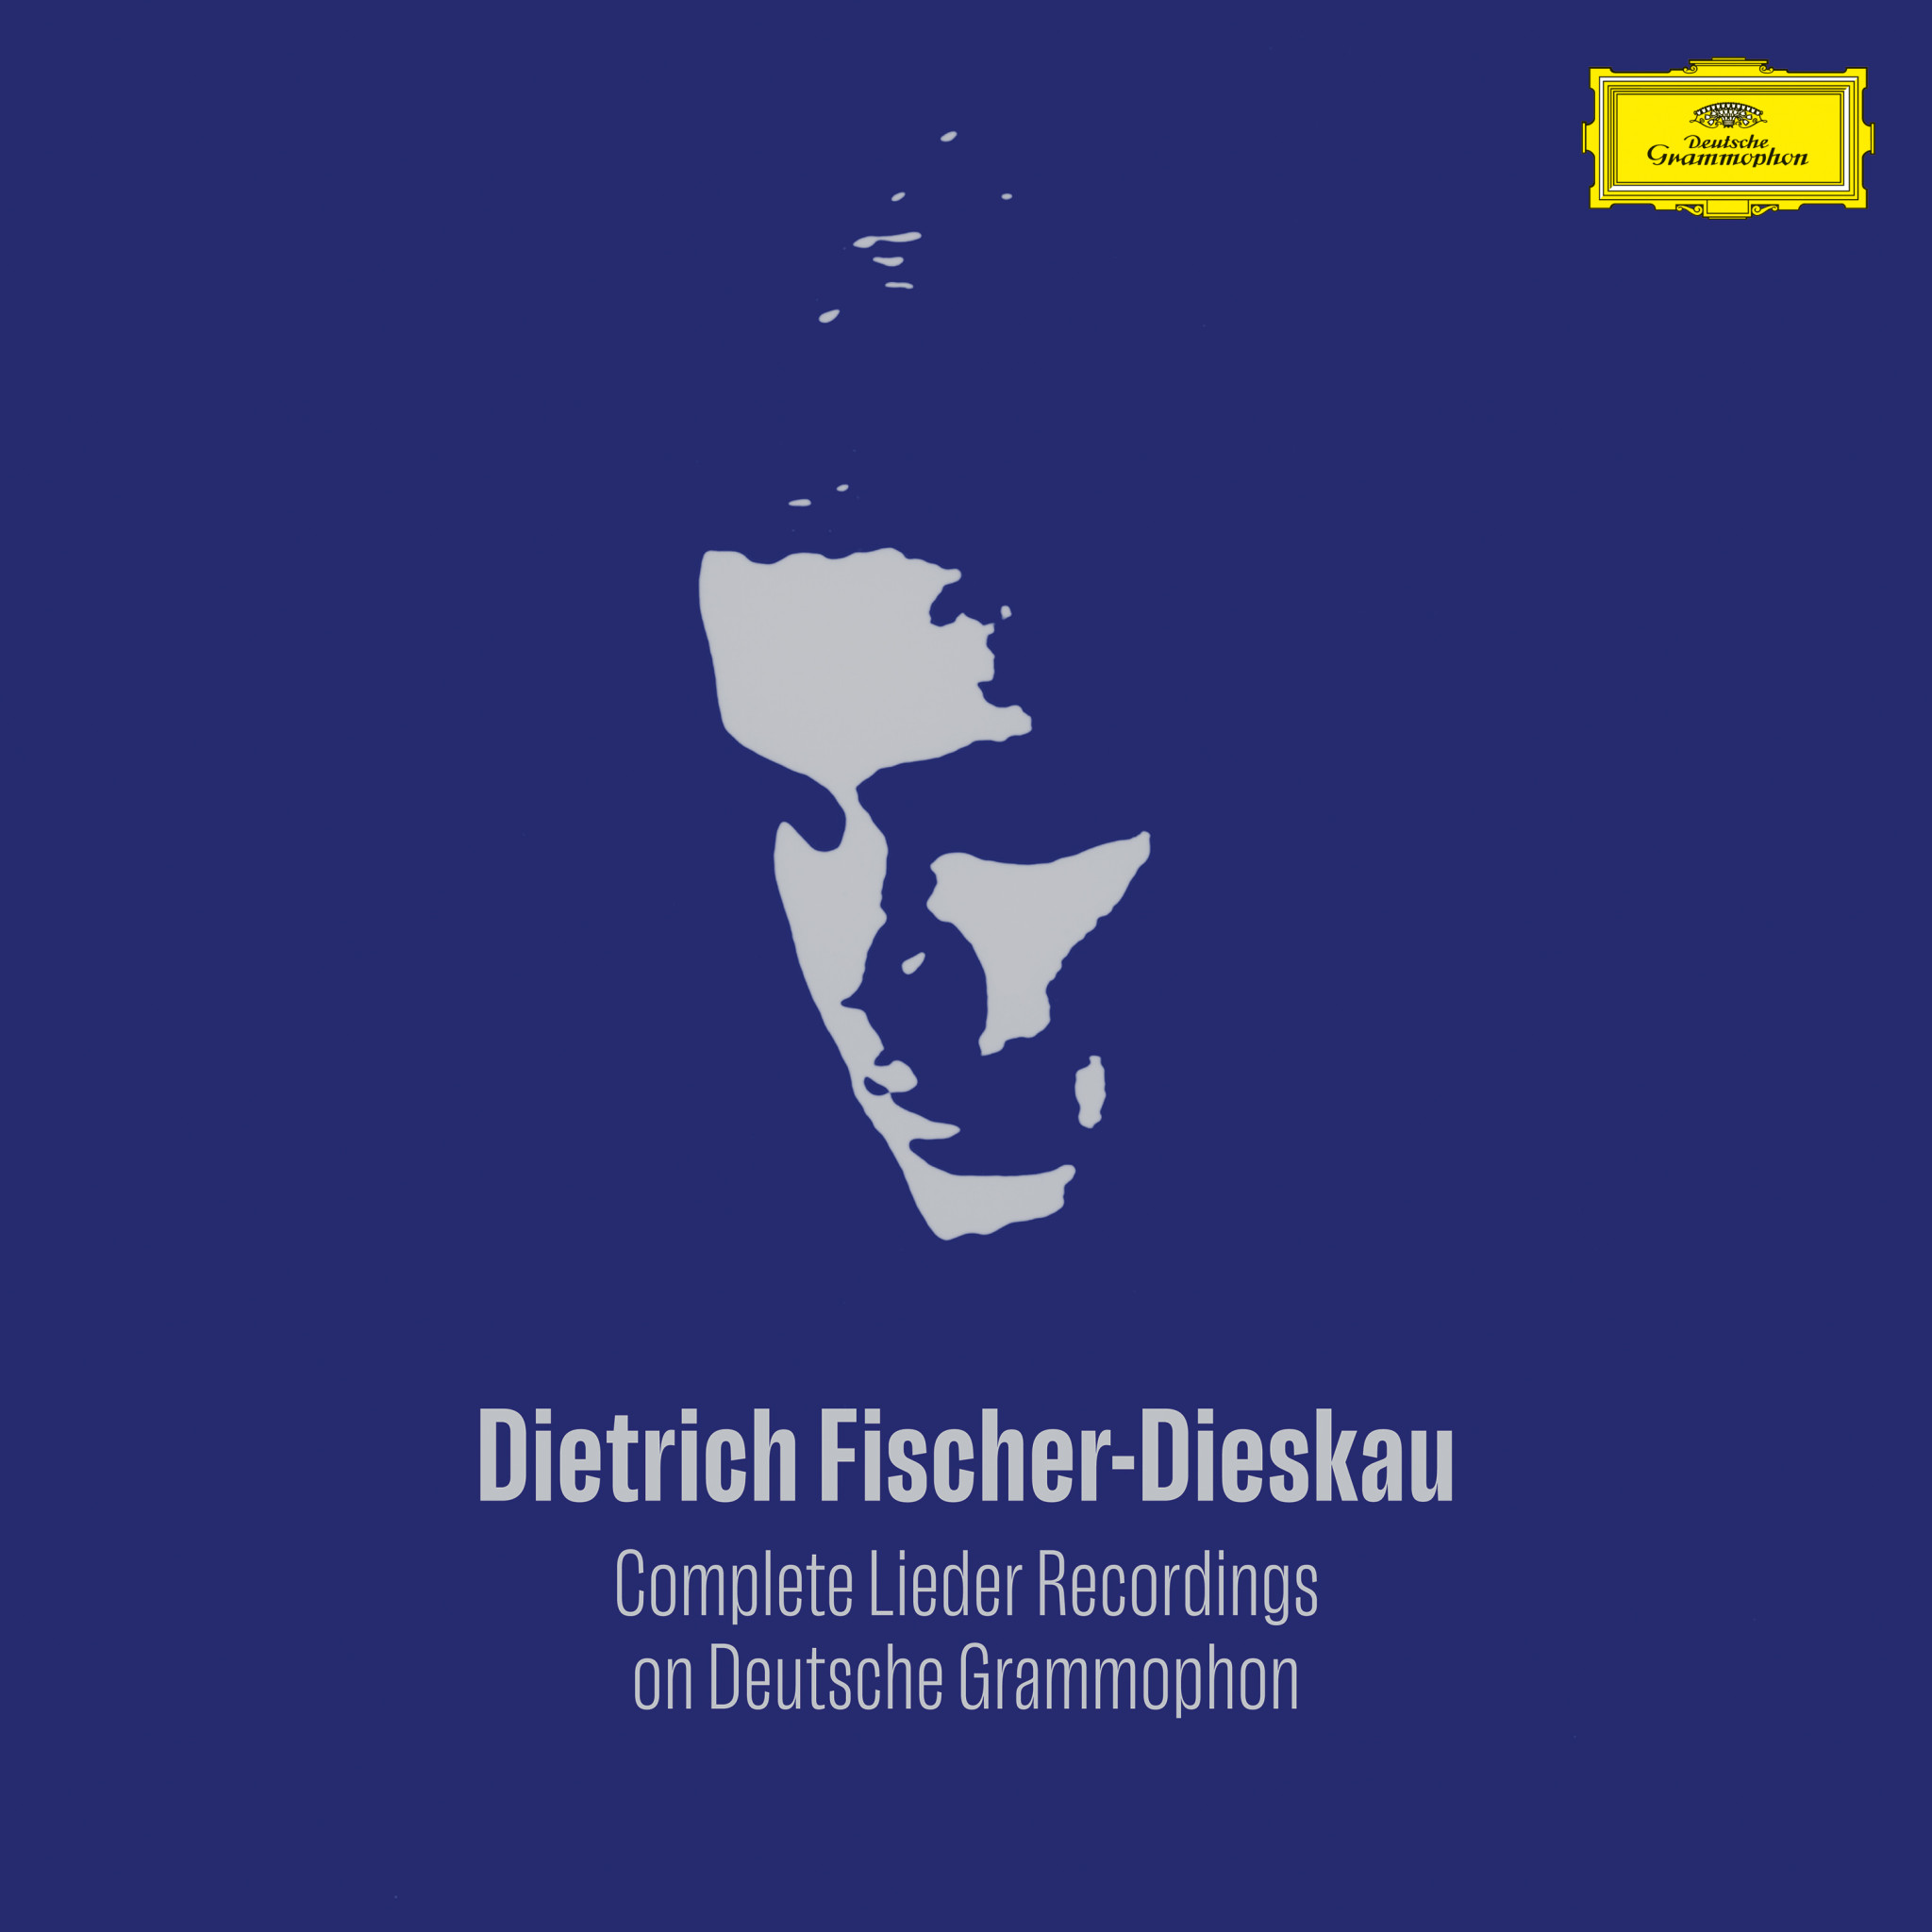 Dietrich Fischer-Dieskau - Complete Lieder Recordings on Deutsche Grammophon Cover